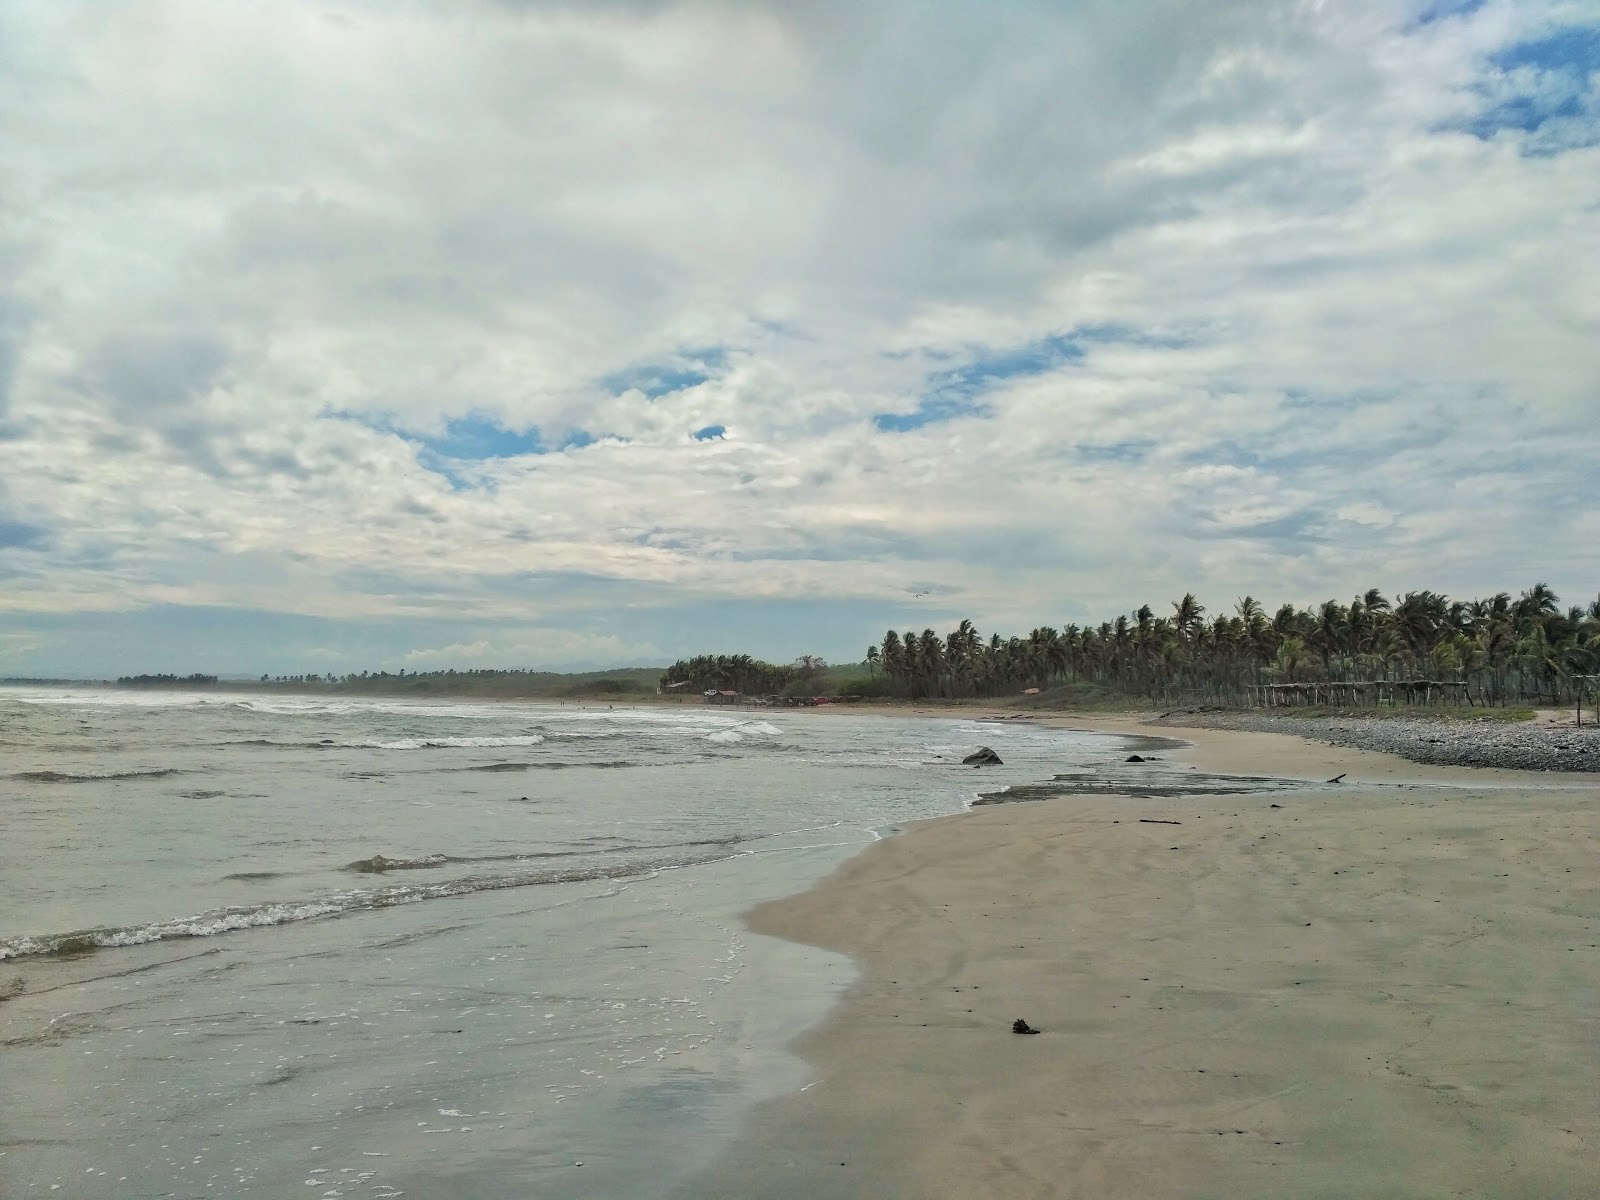 Atracadero Beach'in fotoğrafı kahverengi kum yüzey ile